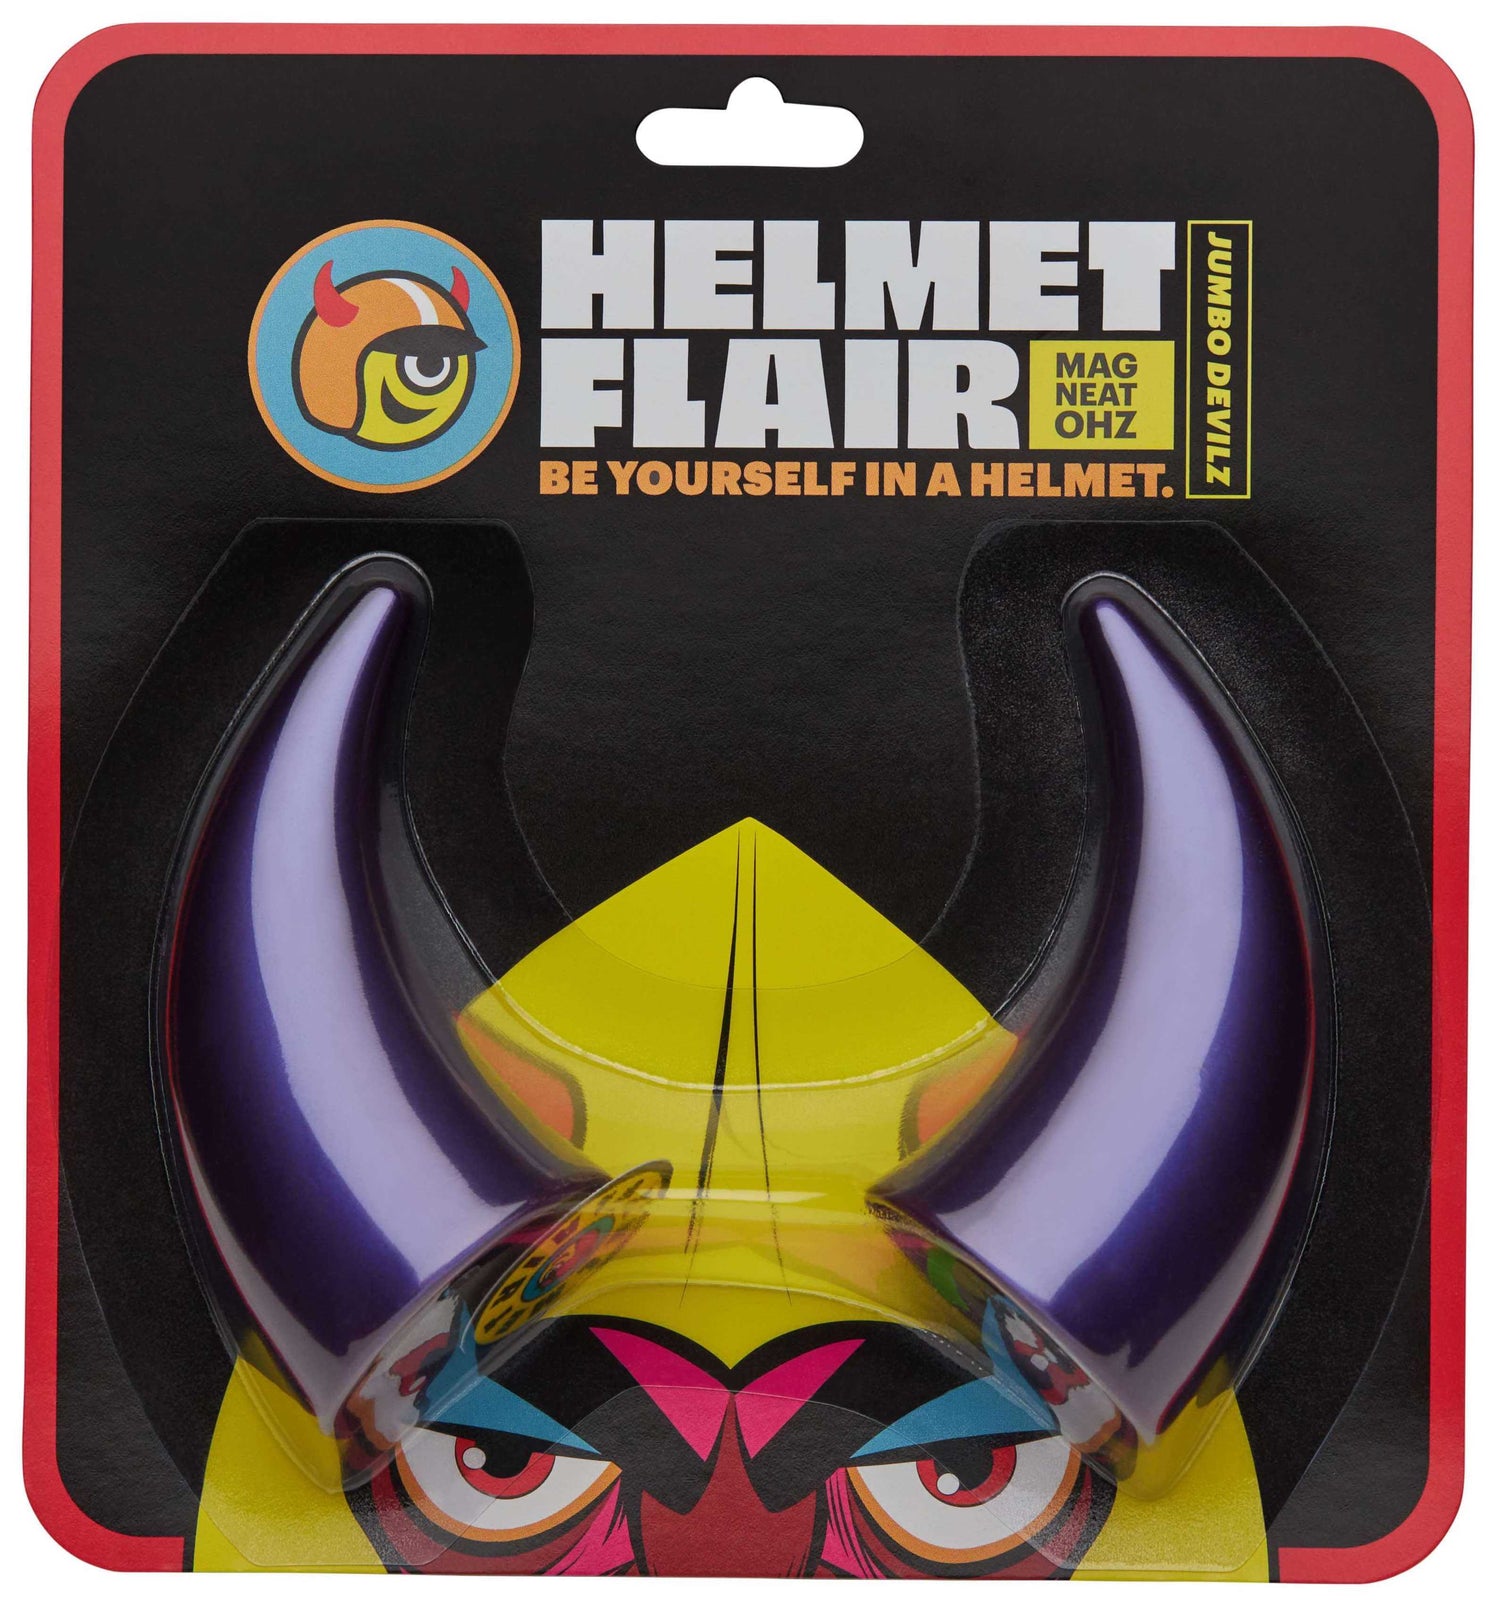 MagNeatOhz: Large Purple Devil Horns for Helmet